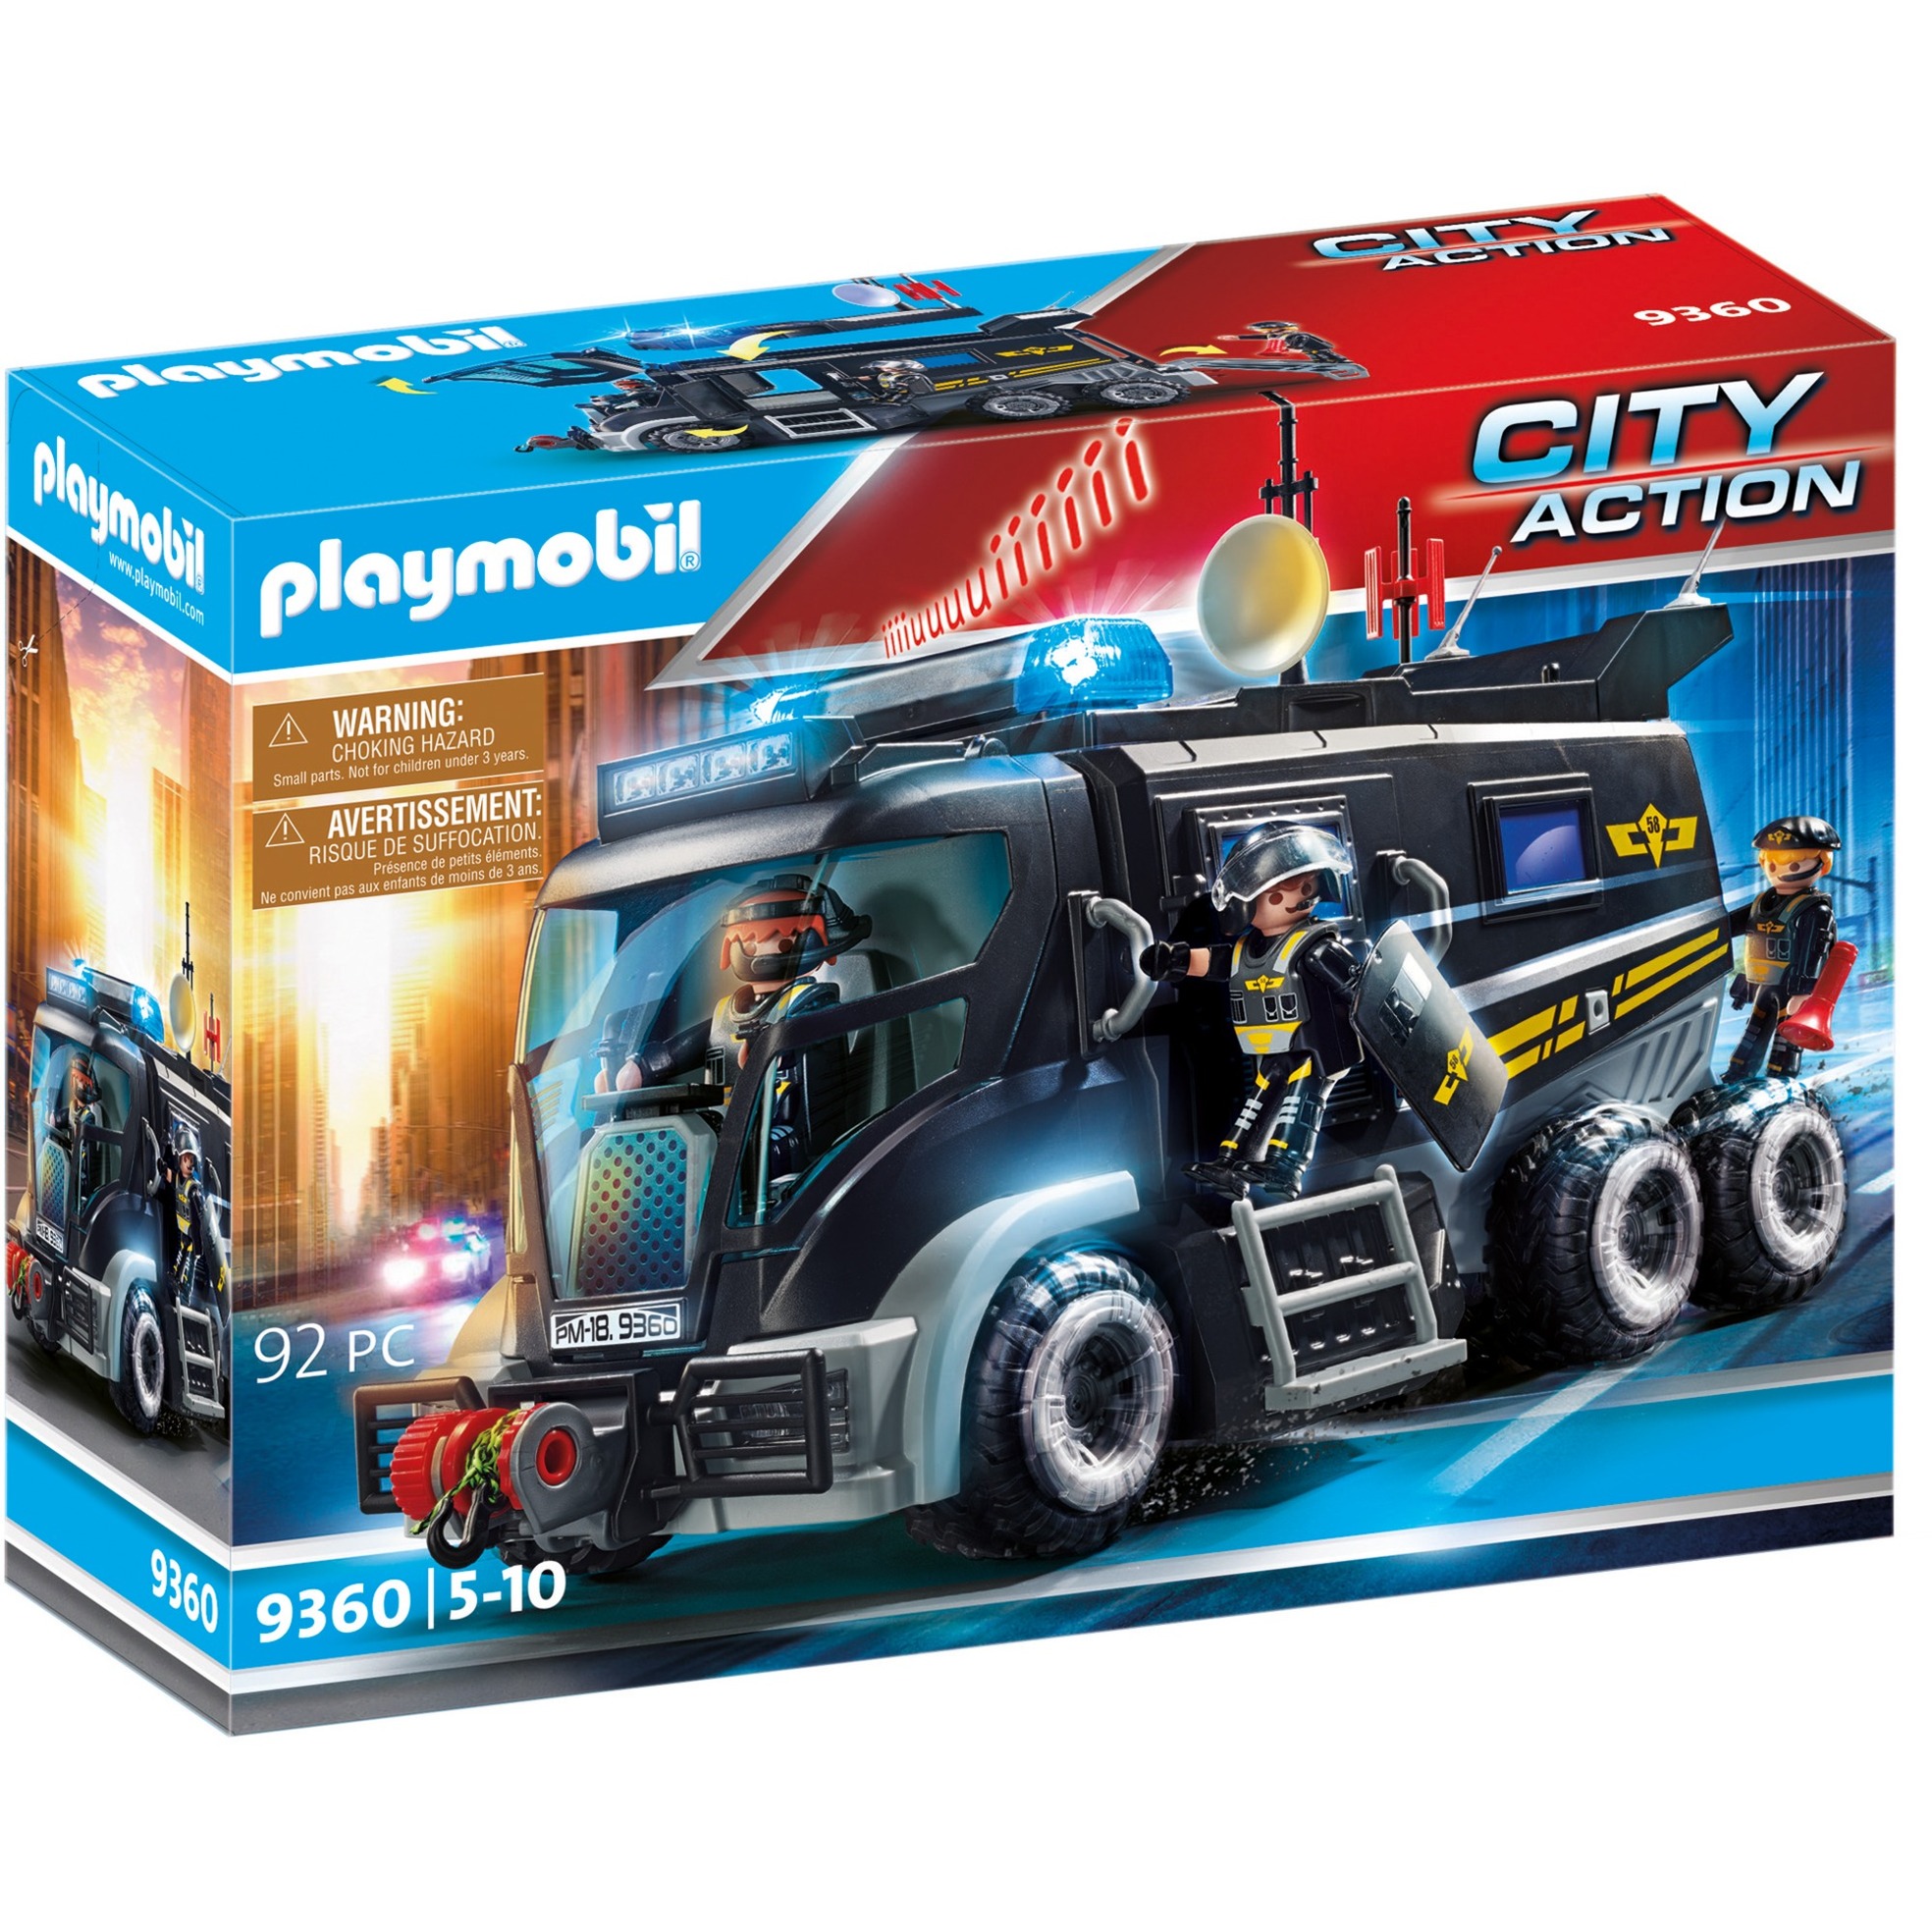 Playmobil Konstruktions-Spielset "SEK-Truck mit Licht und Sound (9360) City Action"